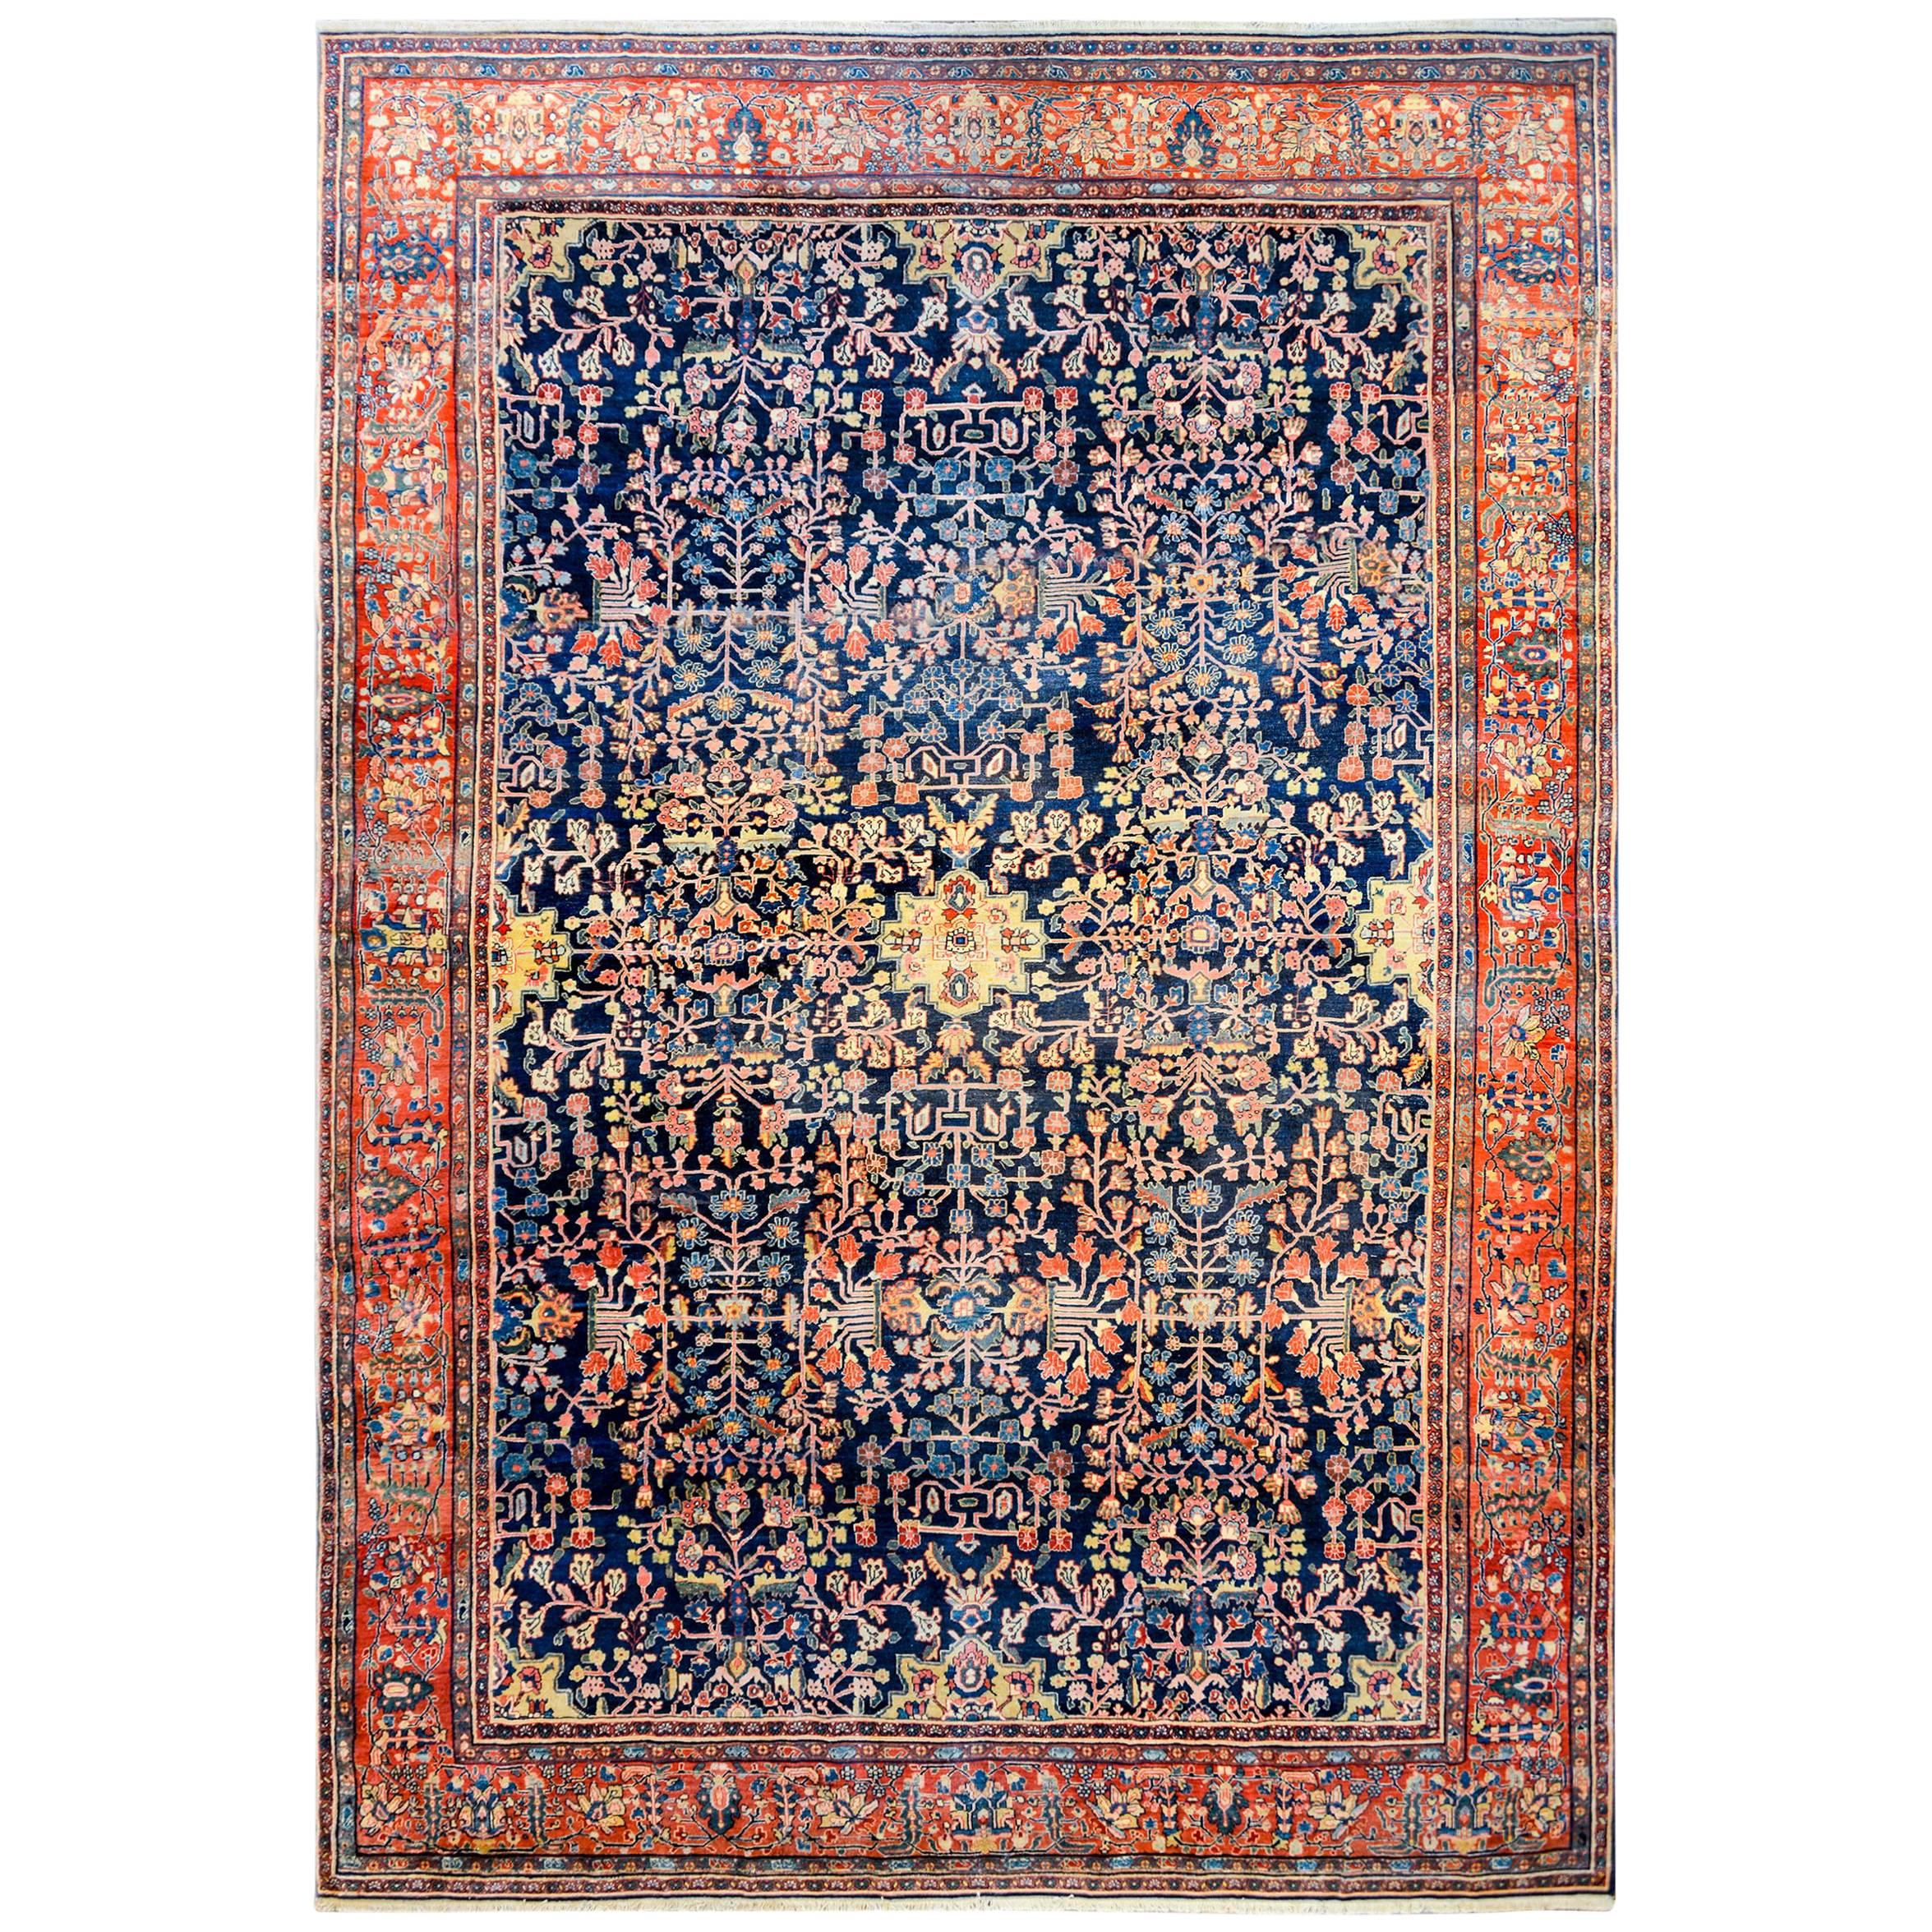 Unglaublicher Sarouk Farahan-Teppich aus dem späten 19. Jahrhundert